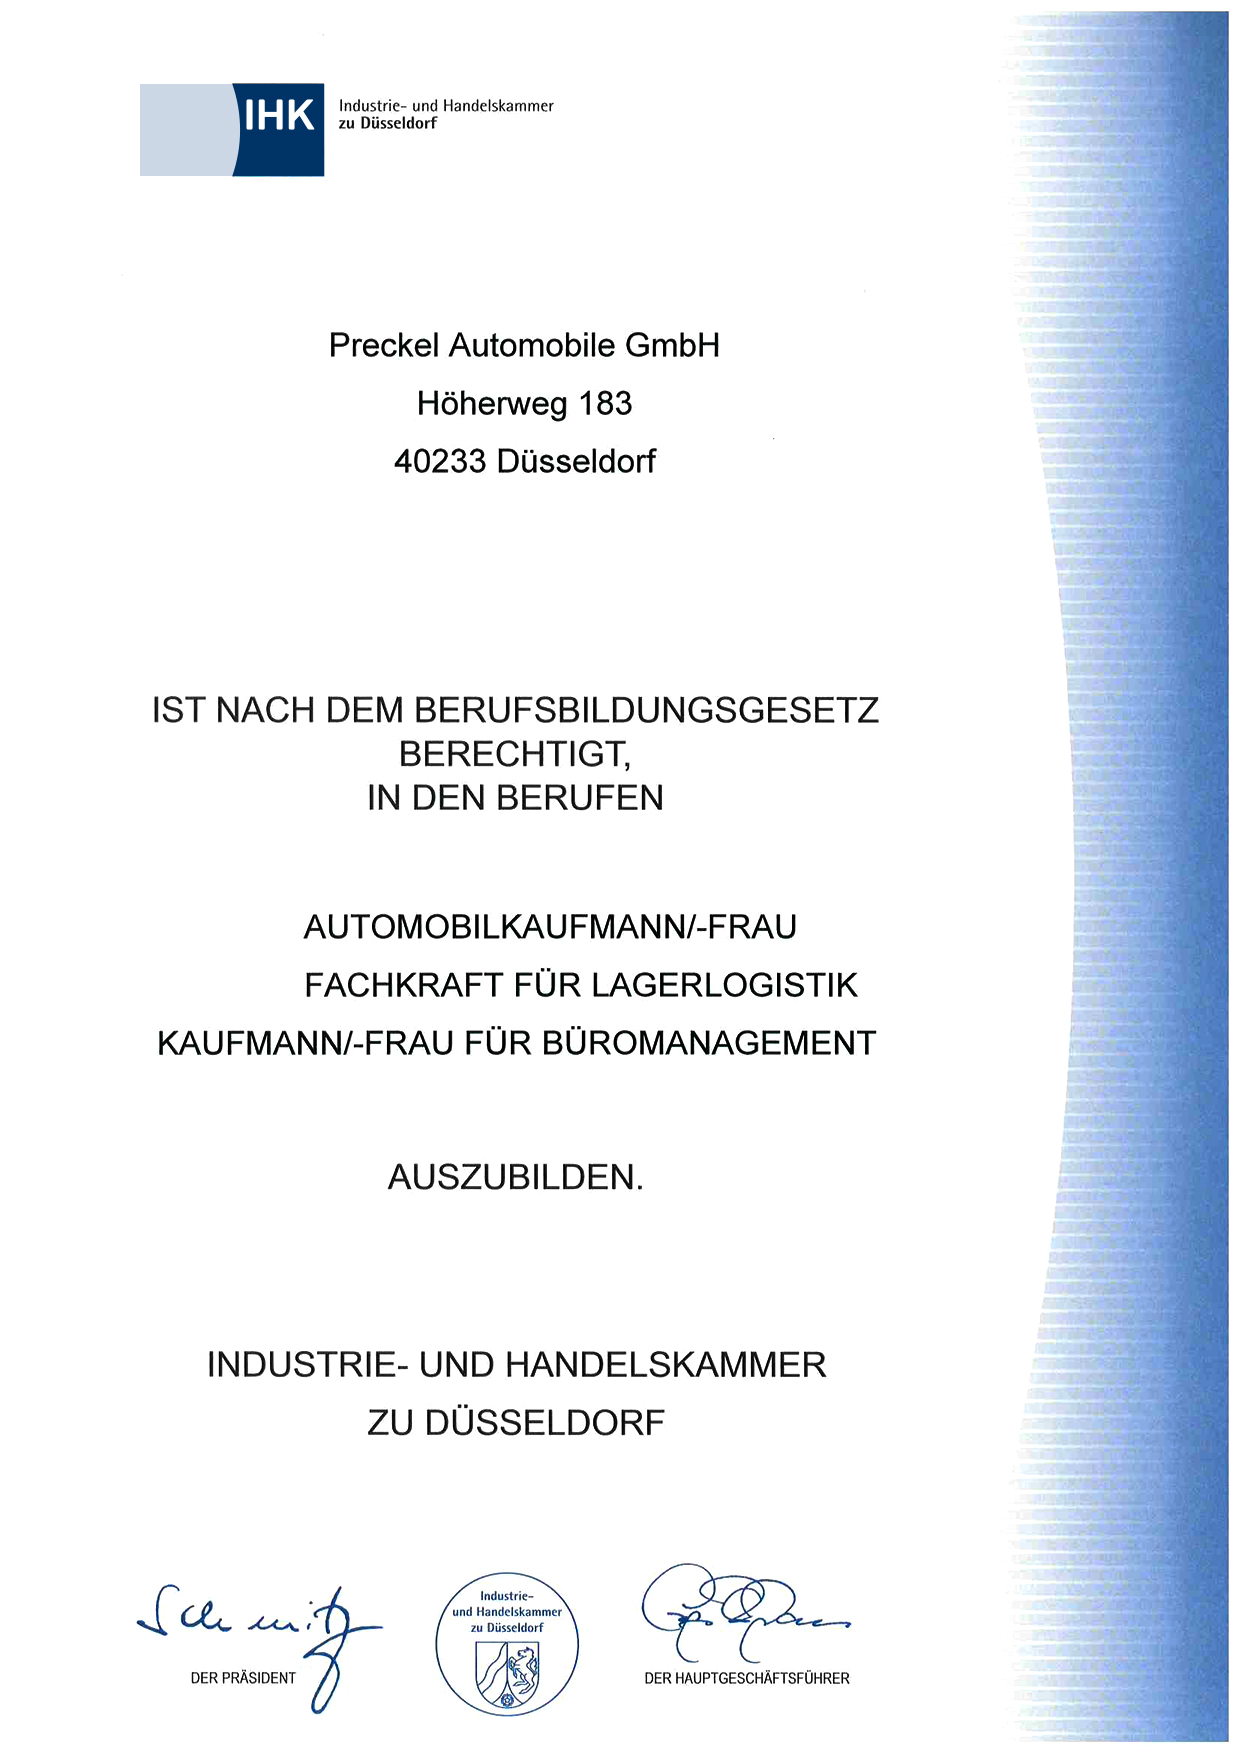 Preckel Automobile GmbH, Niederlassung Düsseldorf ist anerkannter Ausbildungsbetrieb der IHK Düsseldorf.